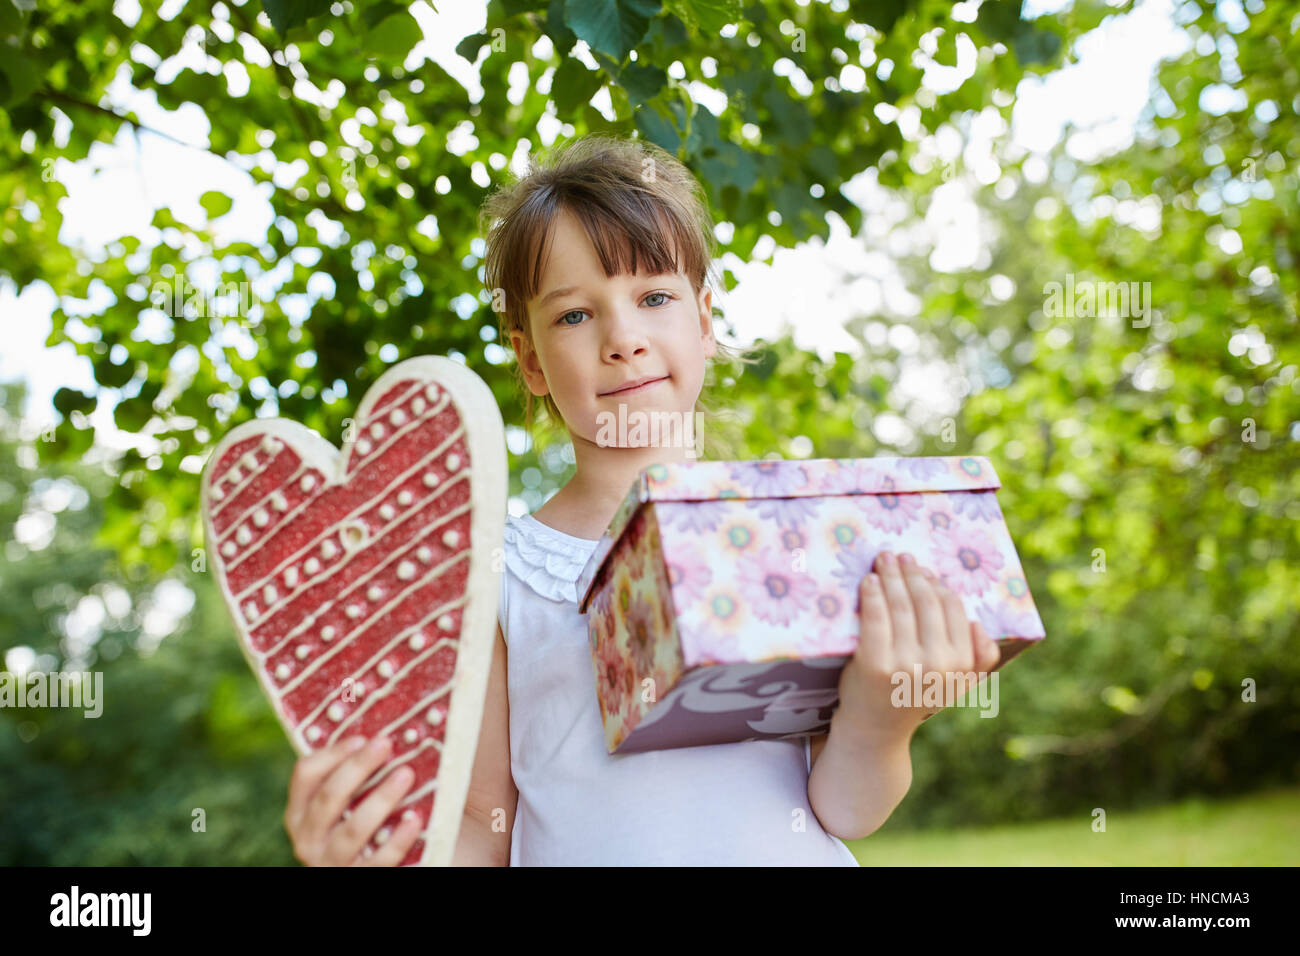 Kind mit Geburtstagsgeschenk als Überraschung auf Geburtstagsparty Stockfoto